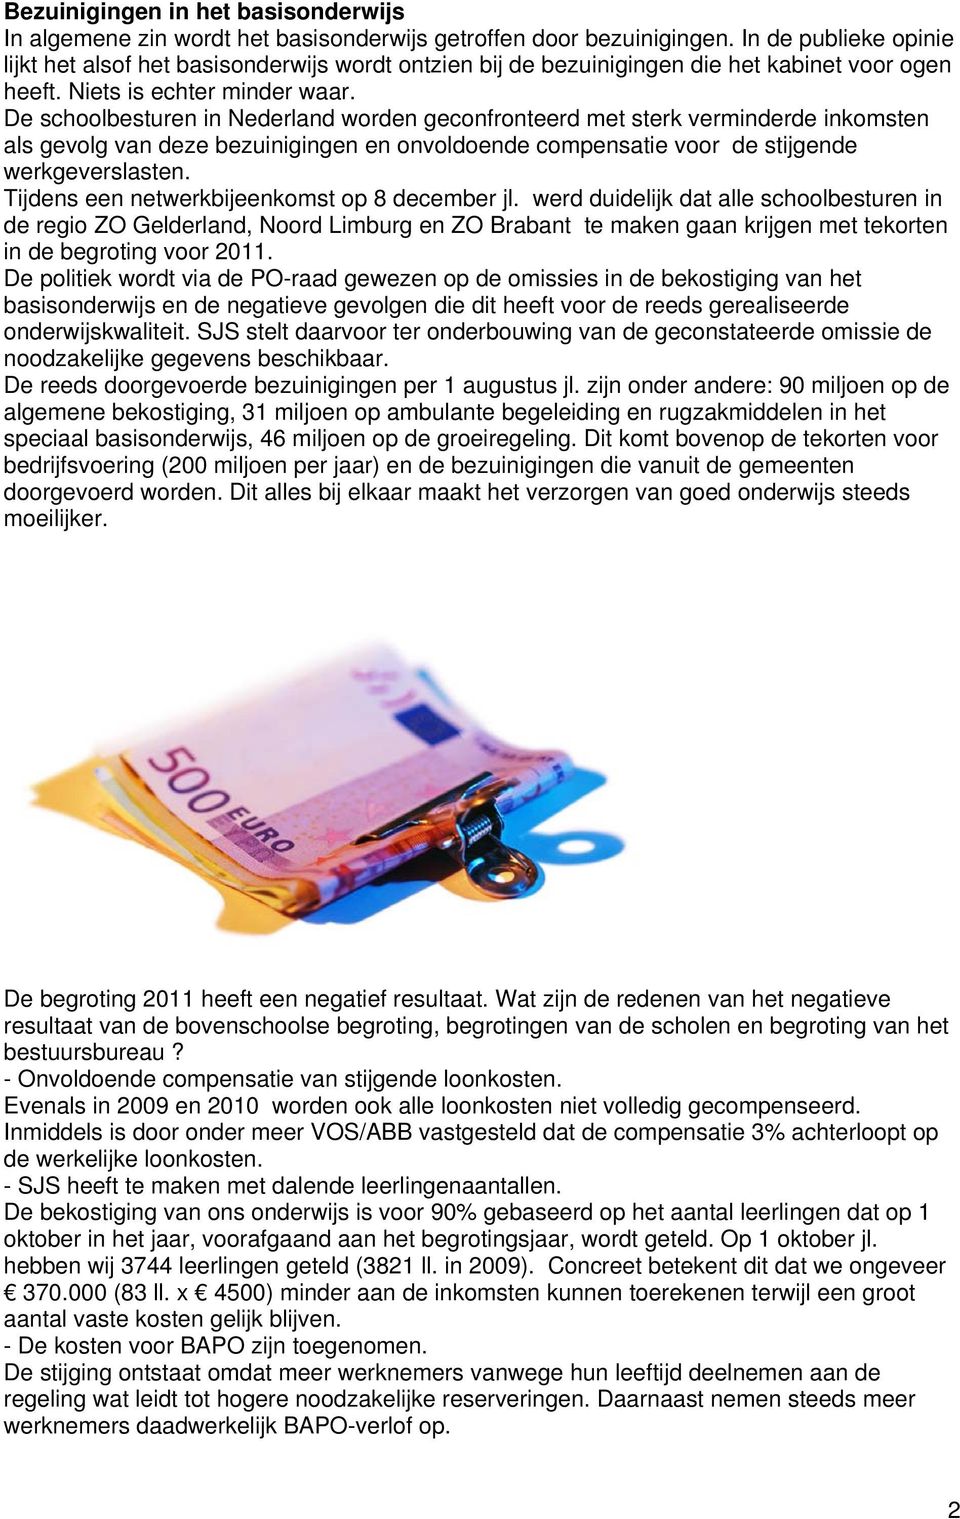 De schoolbesturen in Nederland worden geconfronteerd met sterk verminderde inkomsten als gevolg van deze bezuinigingen en onvoldoende compensatie voor de stijgende werkgeverslasten.